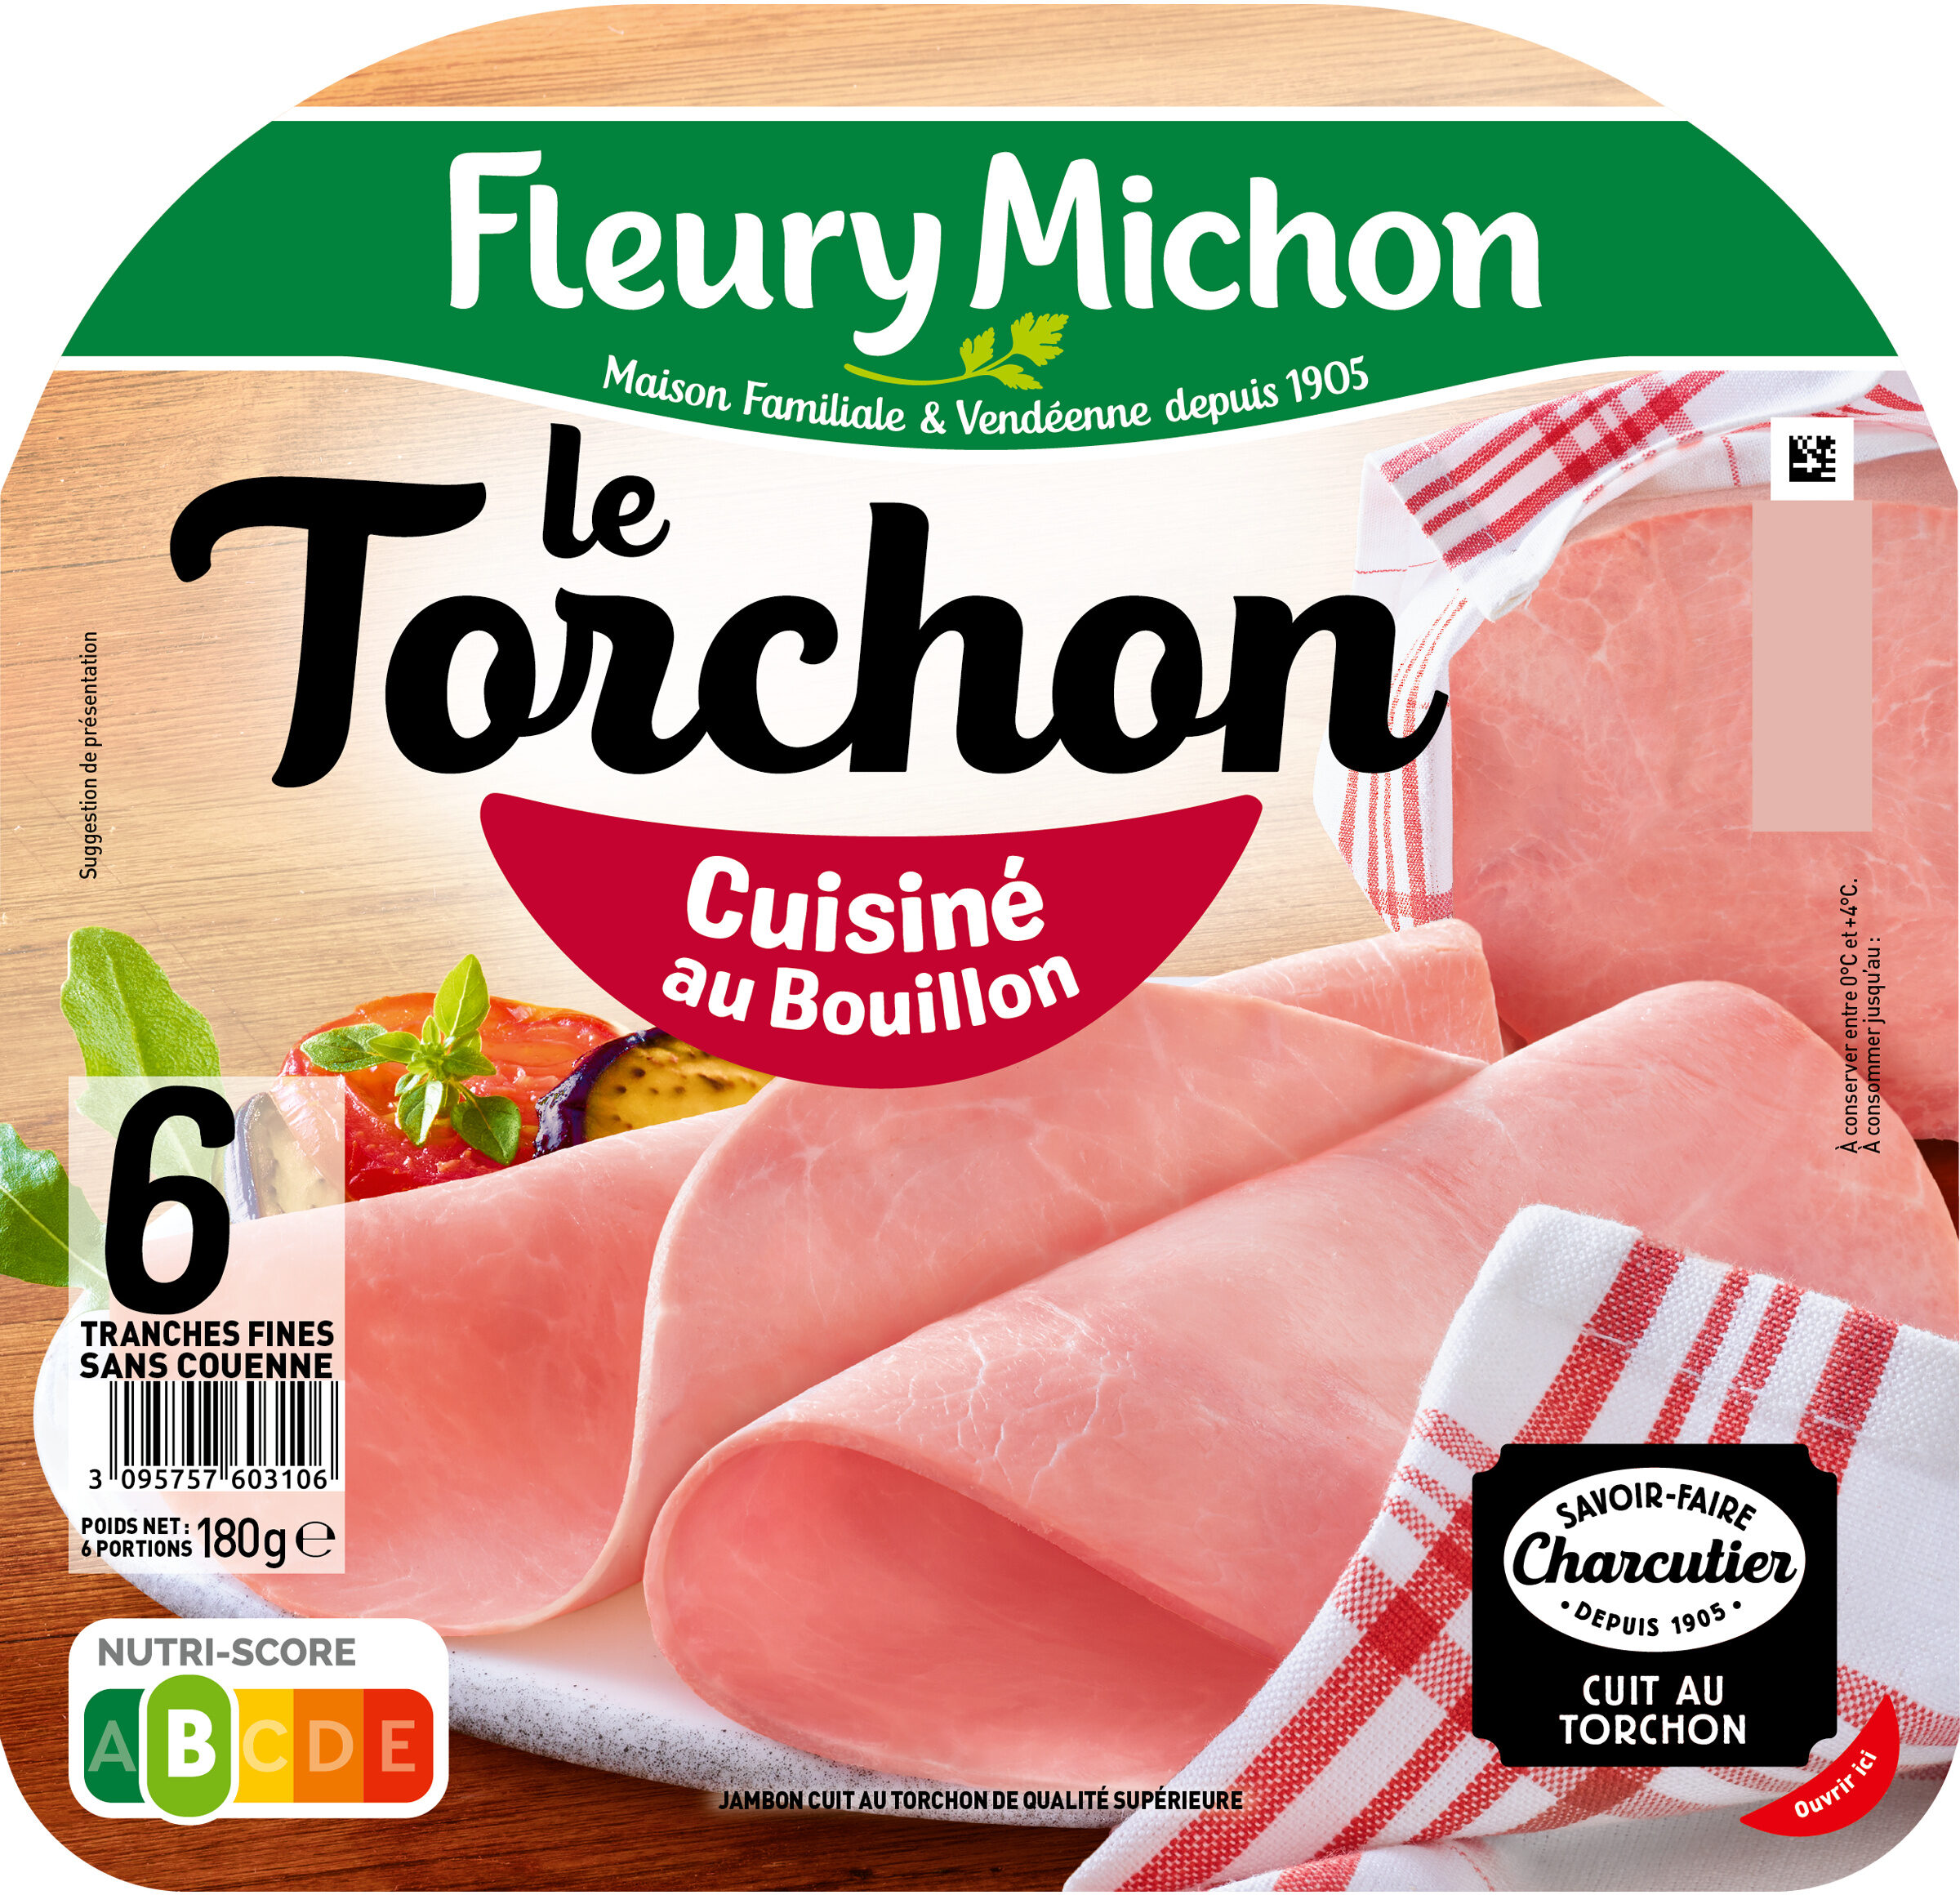 Le Torchon - Cuisiné au Bouillon - 产品 - fr